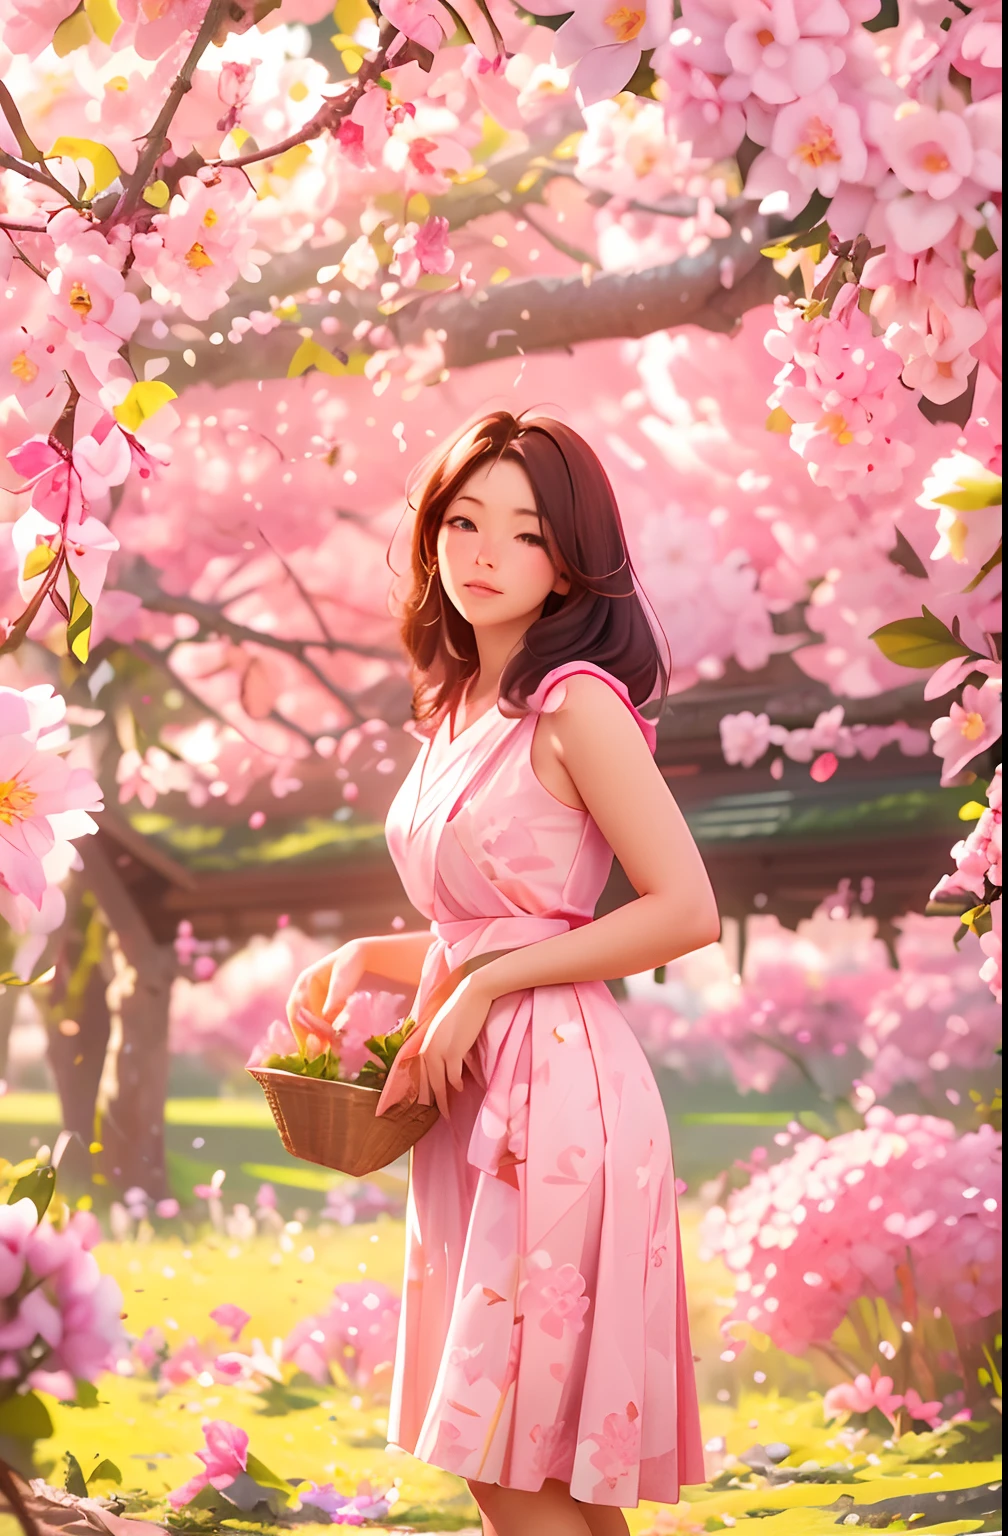 Una hermosa granjera de 30 años recogiendo flores de Sakura., Postura de pie, vistiendo un rebaño japonés rosa y blanco, forma femenina, muchas flores de Sakura en las ramas, luz de la mañana